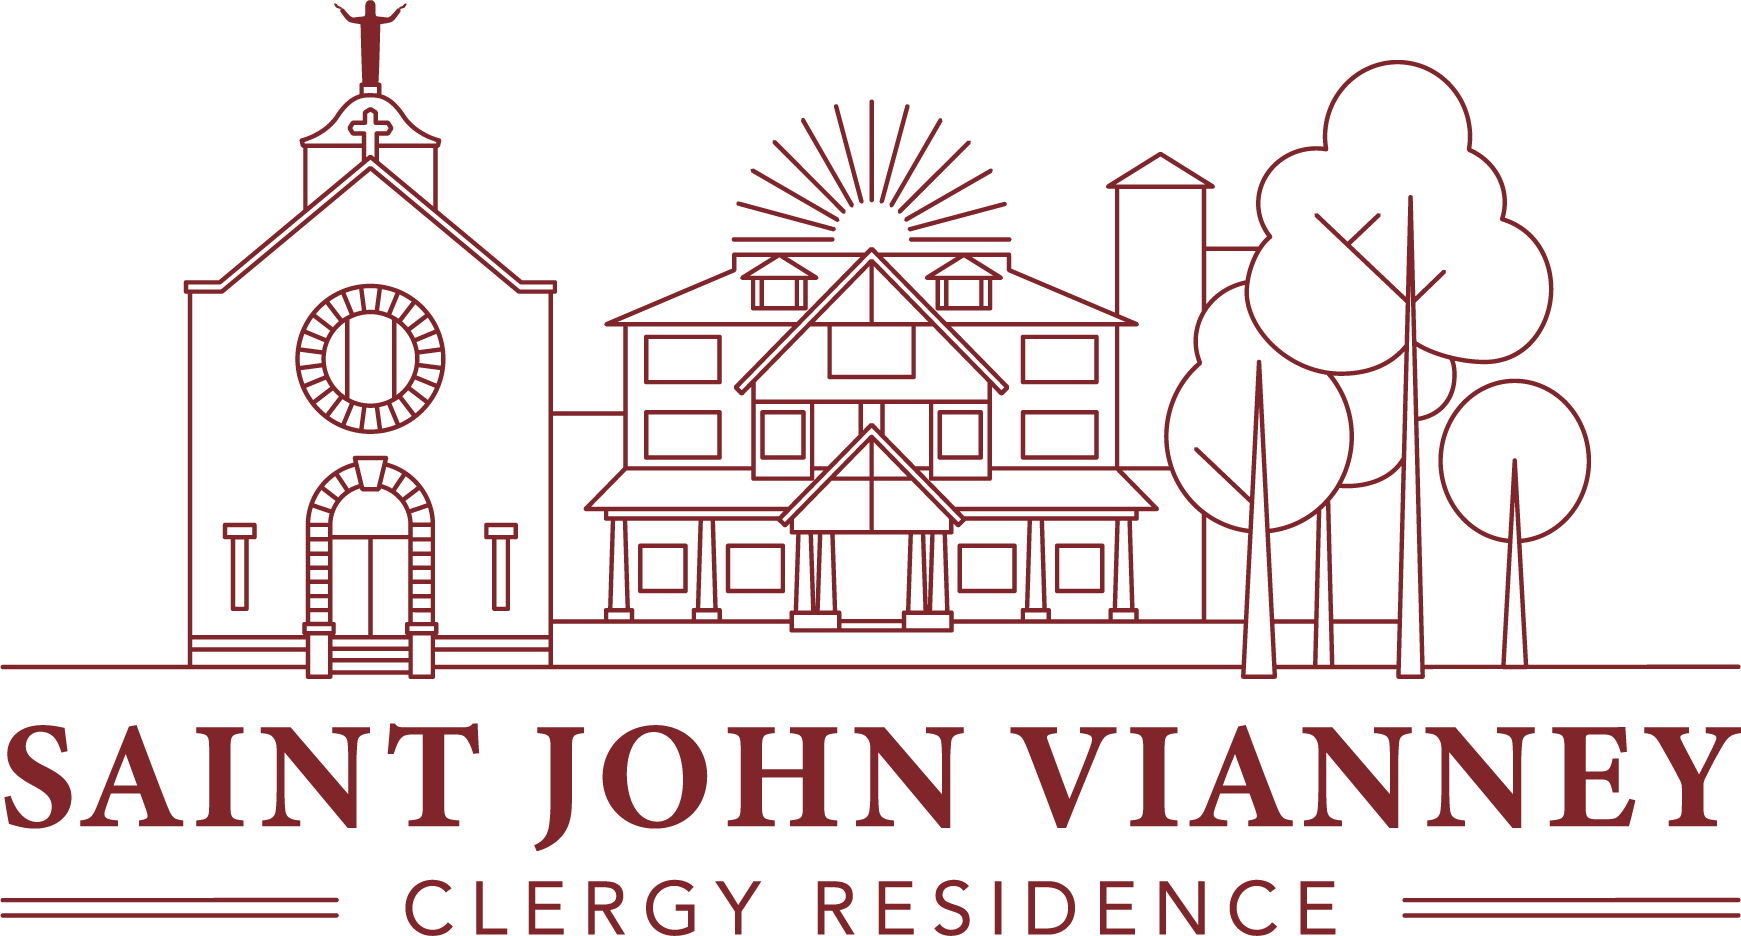 Saint John Vianney Clergy Residence Nov 19 Logo